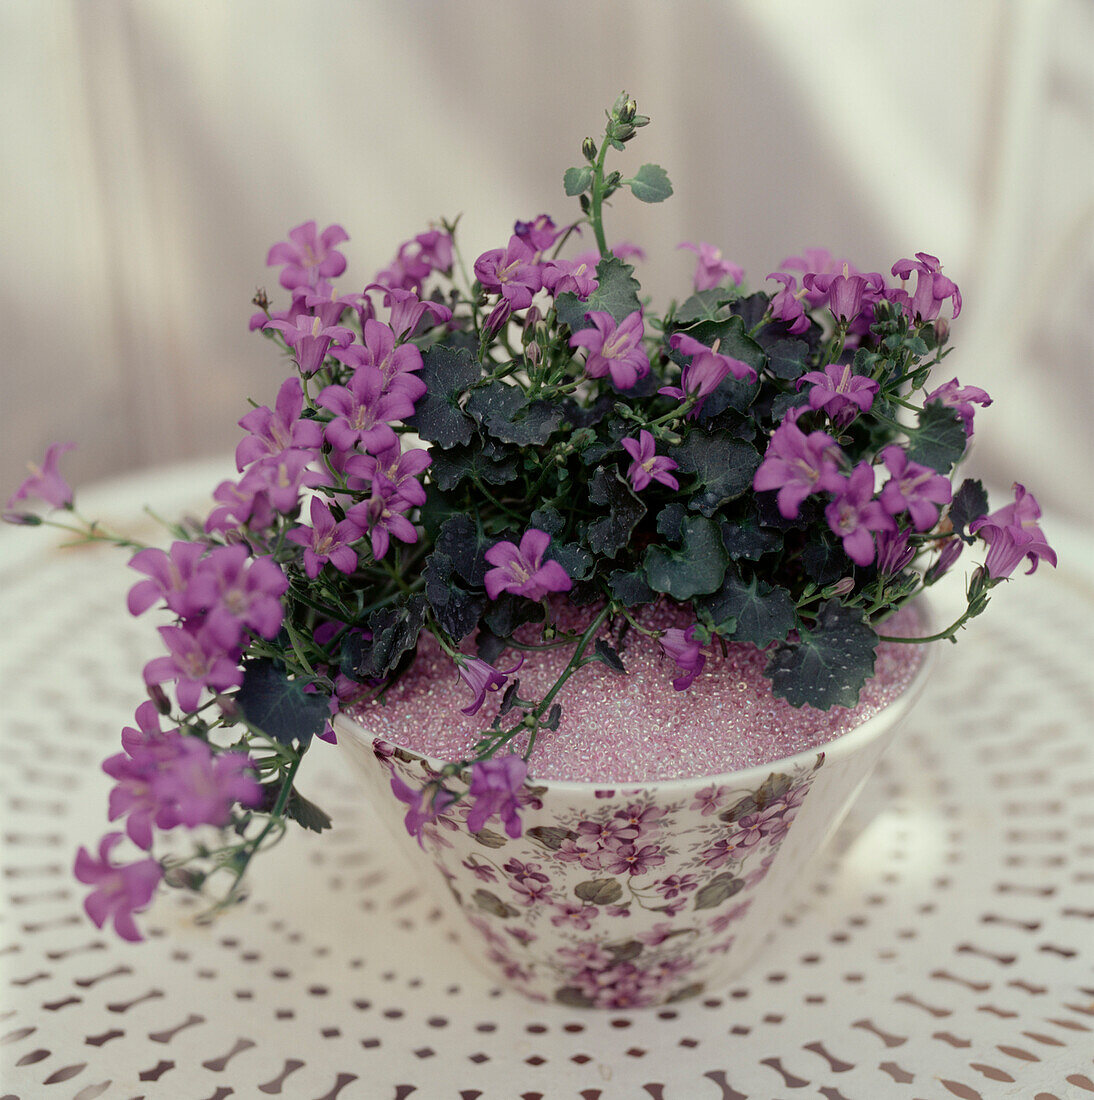 Violett blühende Topfpflanze in einer Vase auf einem weiß lackierten Metall-Gartentisch